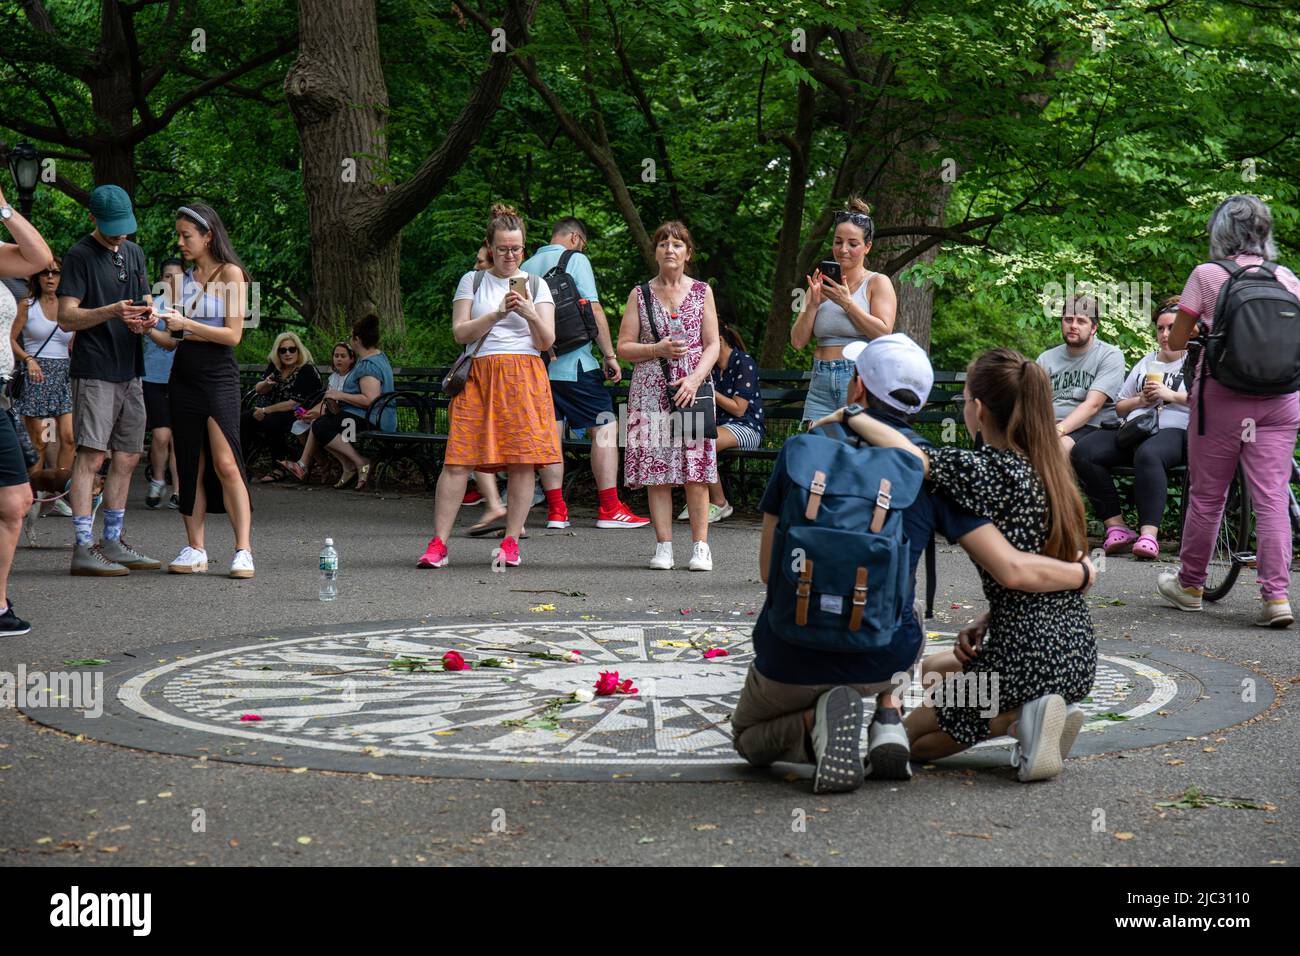 Touristes prenant des photos au mémorial John Lennon ou imagine Mosaic dans Central Park, New York City, Etats-Unis d'Amérique Banque D'Images